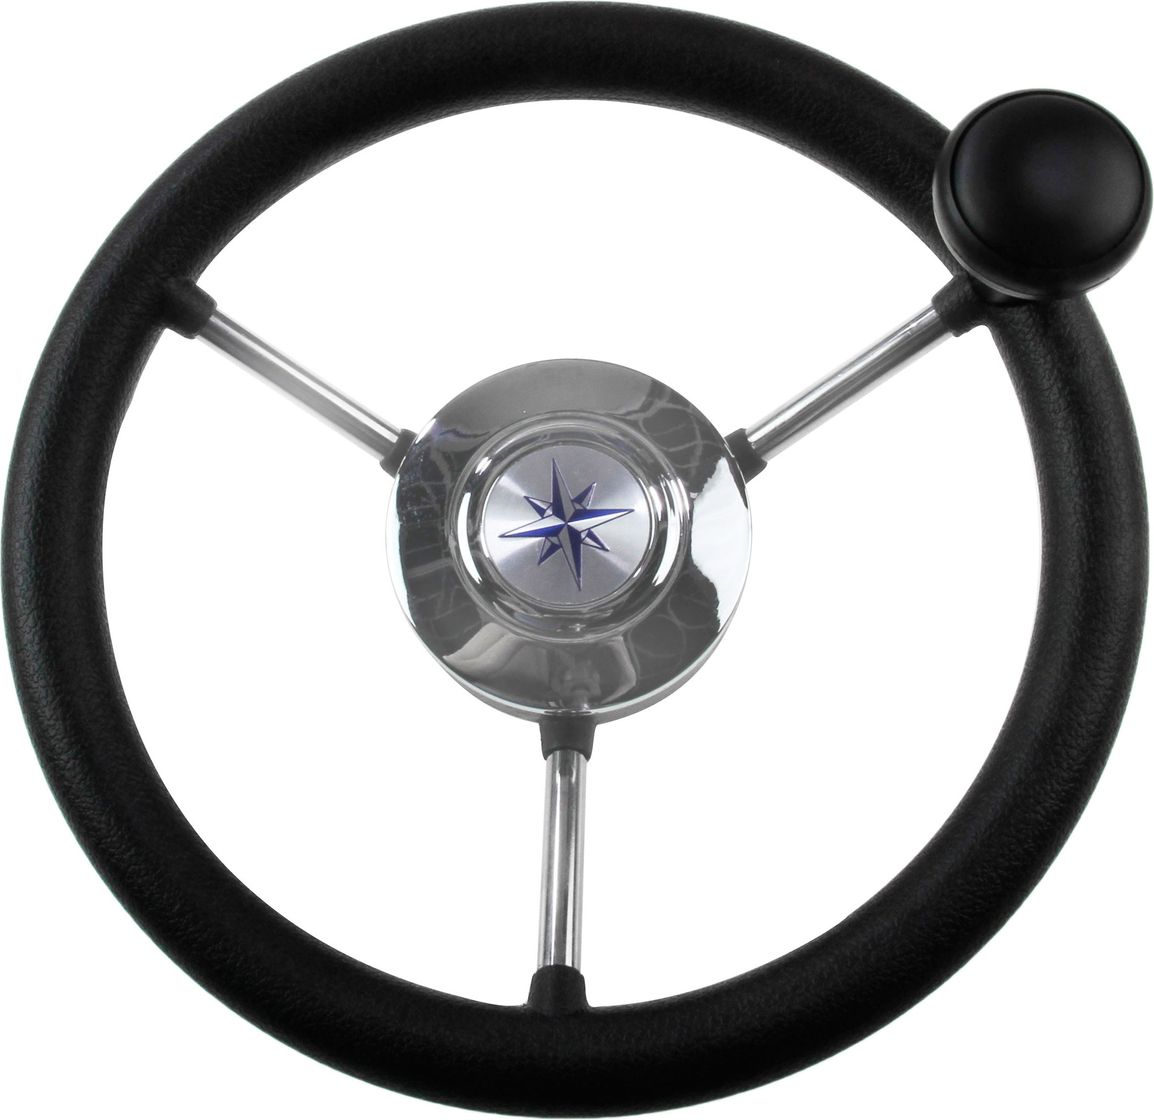 Рулевое колесо LIPARI обод черный, спицы серебряные д. 280 мм со спинером VN828050-01 рулевое колесо manta обод спицы серебряные д 355 мм vn70551 01